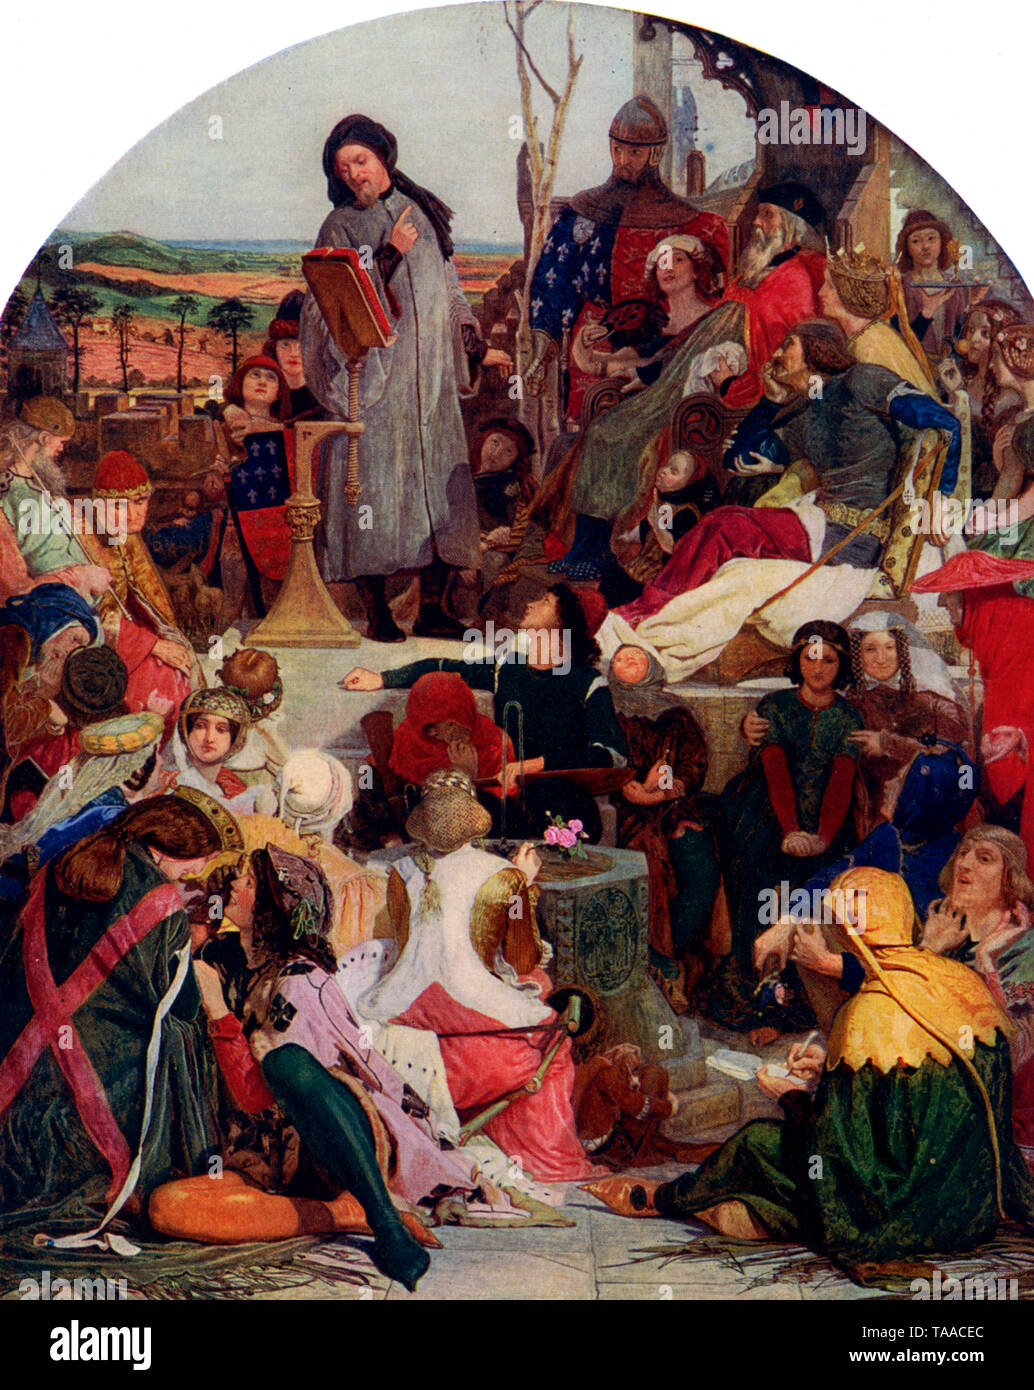 Chaucer am Hof von Edward III. Von Ford Madox Brown (1821-1893). Dies war Ford Madox Brown's größte und ehrgeizigste Malerei und wurde 1851 ausgestellt. Es zeigt Geoffrey Chaucer (c 1343-1400) seine "Legende von Custance' lesen. Unter den Anwesenden sind: Edward III, Edward, der schwarze Prinz, Alice Perrers und John von Gaunt. Stockfoto